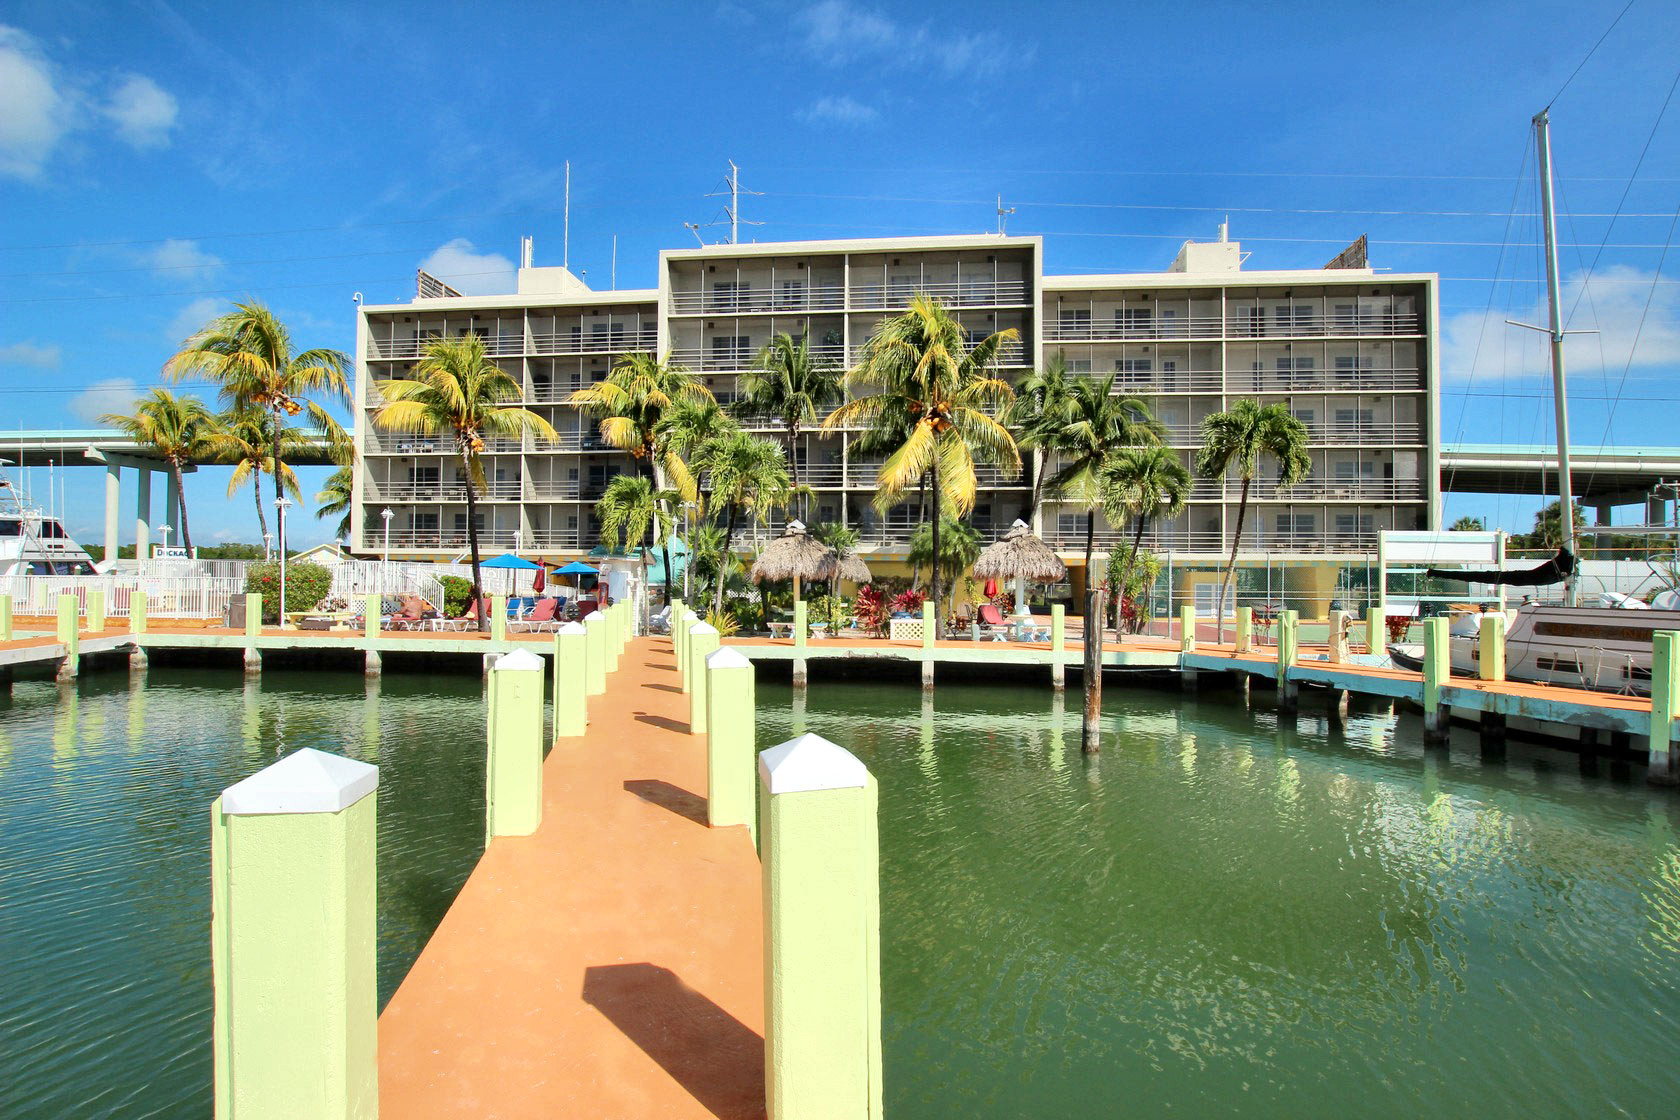 Anchorage Resort & Yacht Club in Key Largo, FL